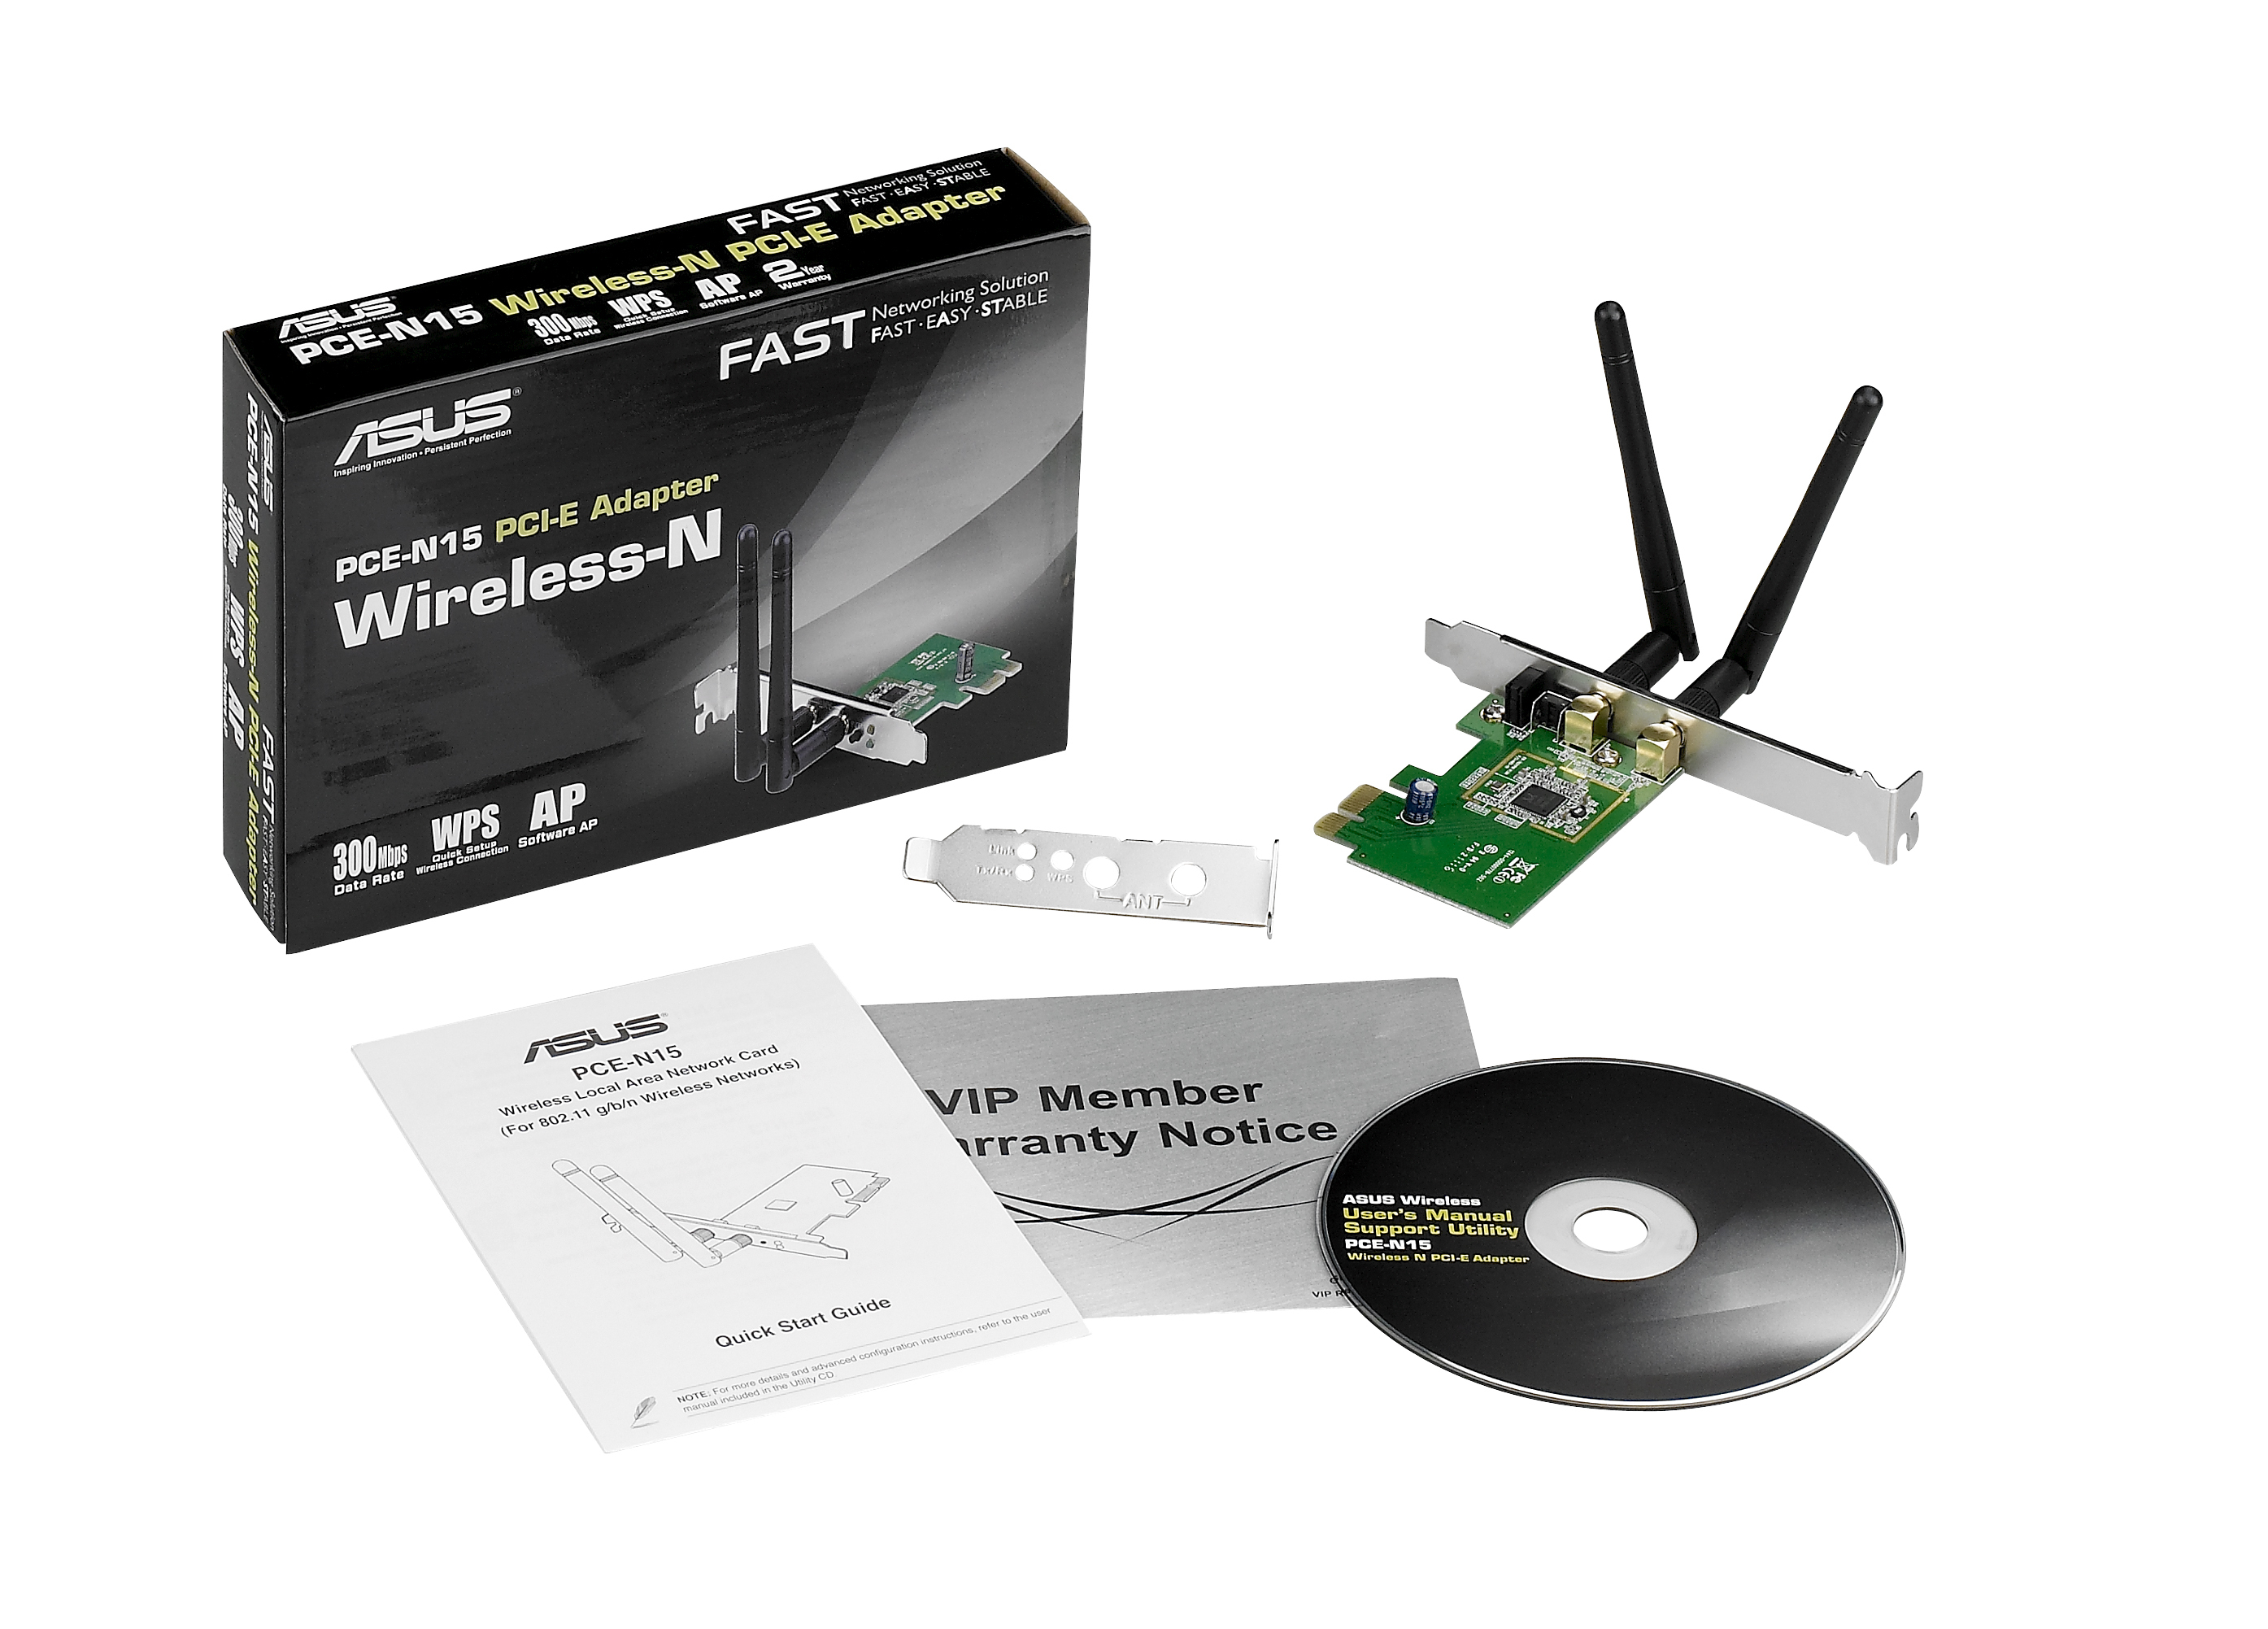 Wireless network PCE-N15